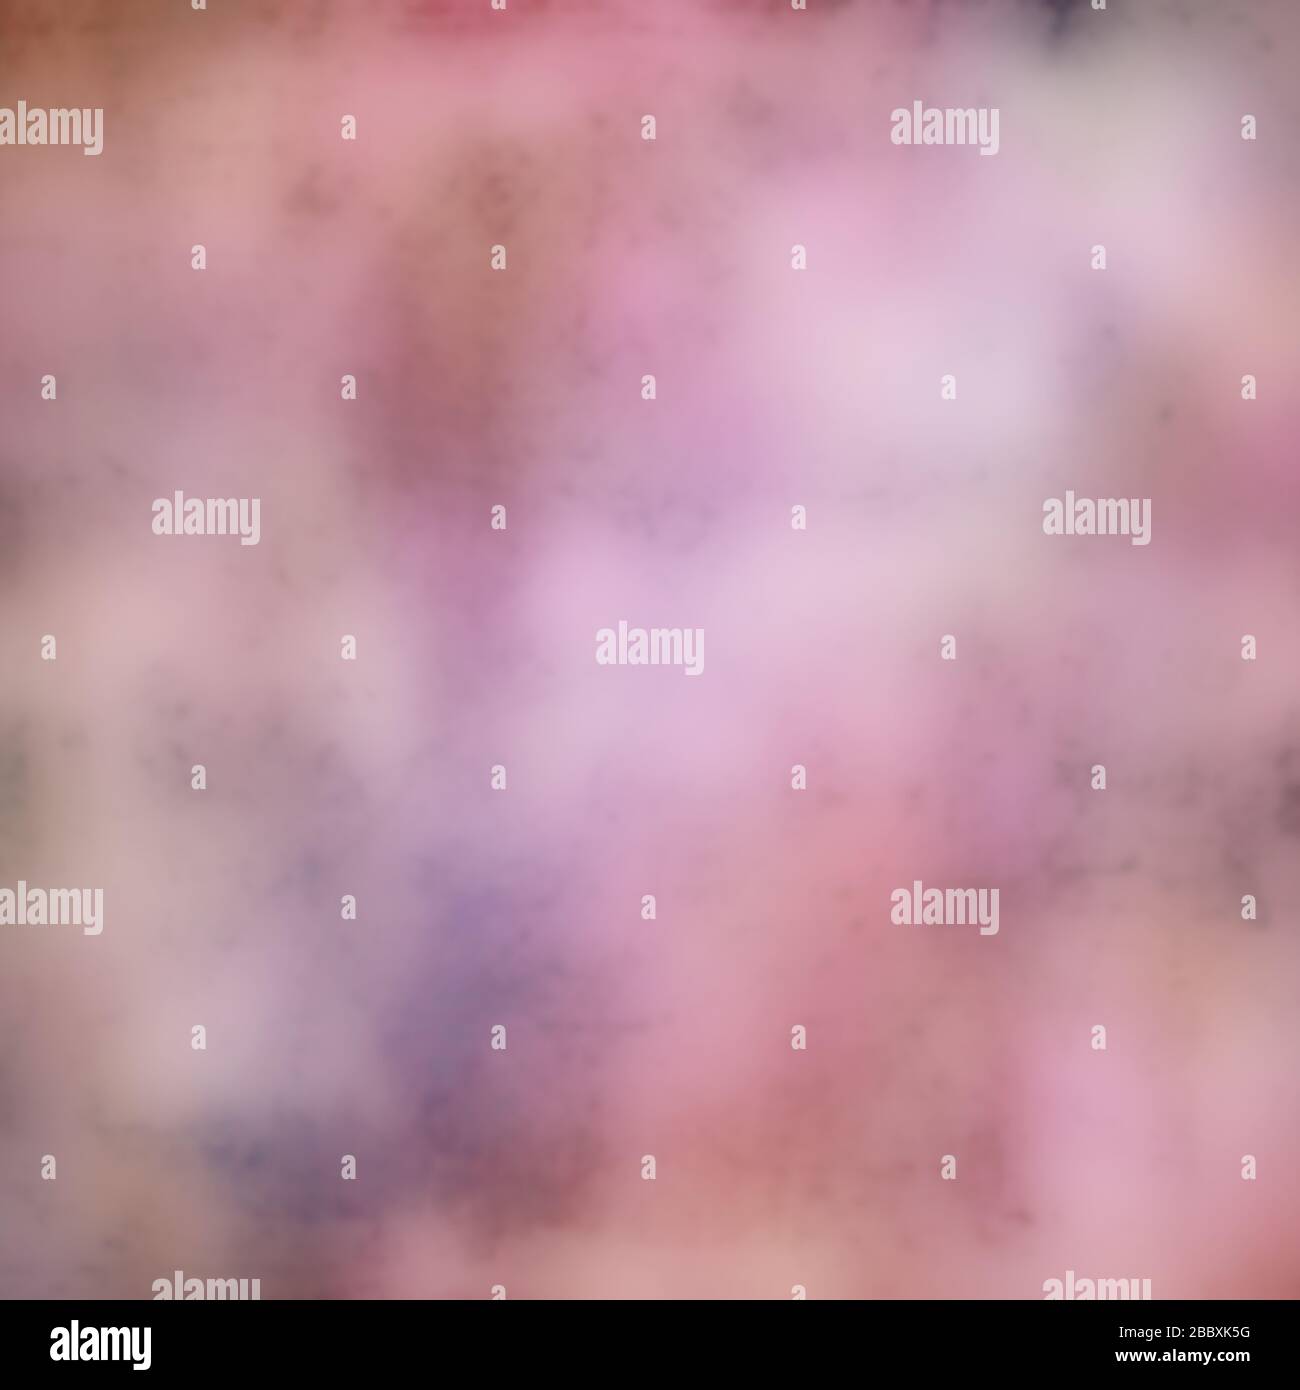 Heller, verschwommener, mehrfarbener, abstrakter Hintergrund mit strukturiertem Kunst-Effekt in pastellrosa und weißen Farben. Stockfoto